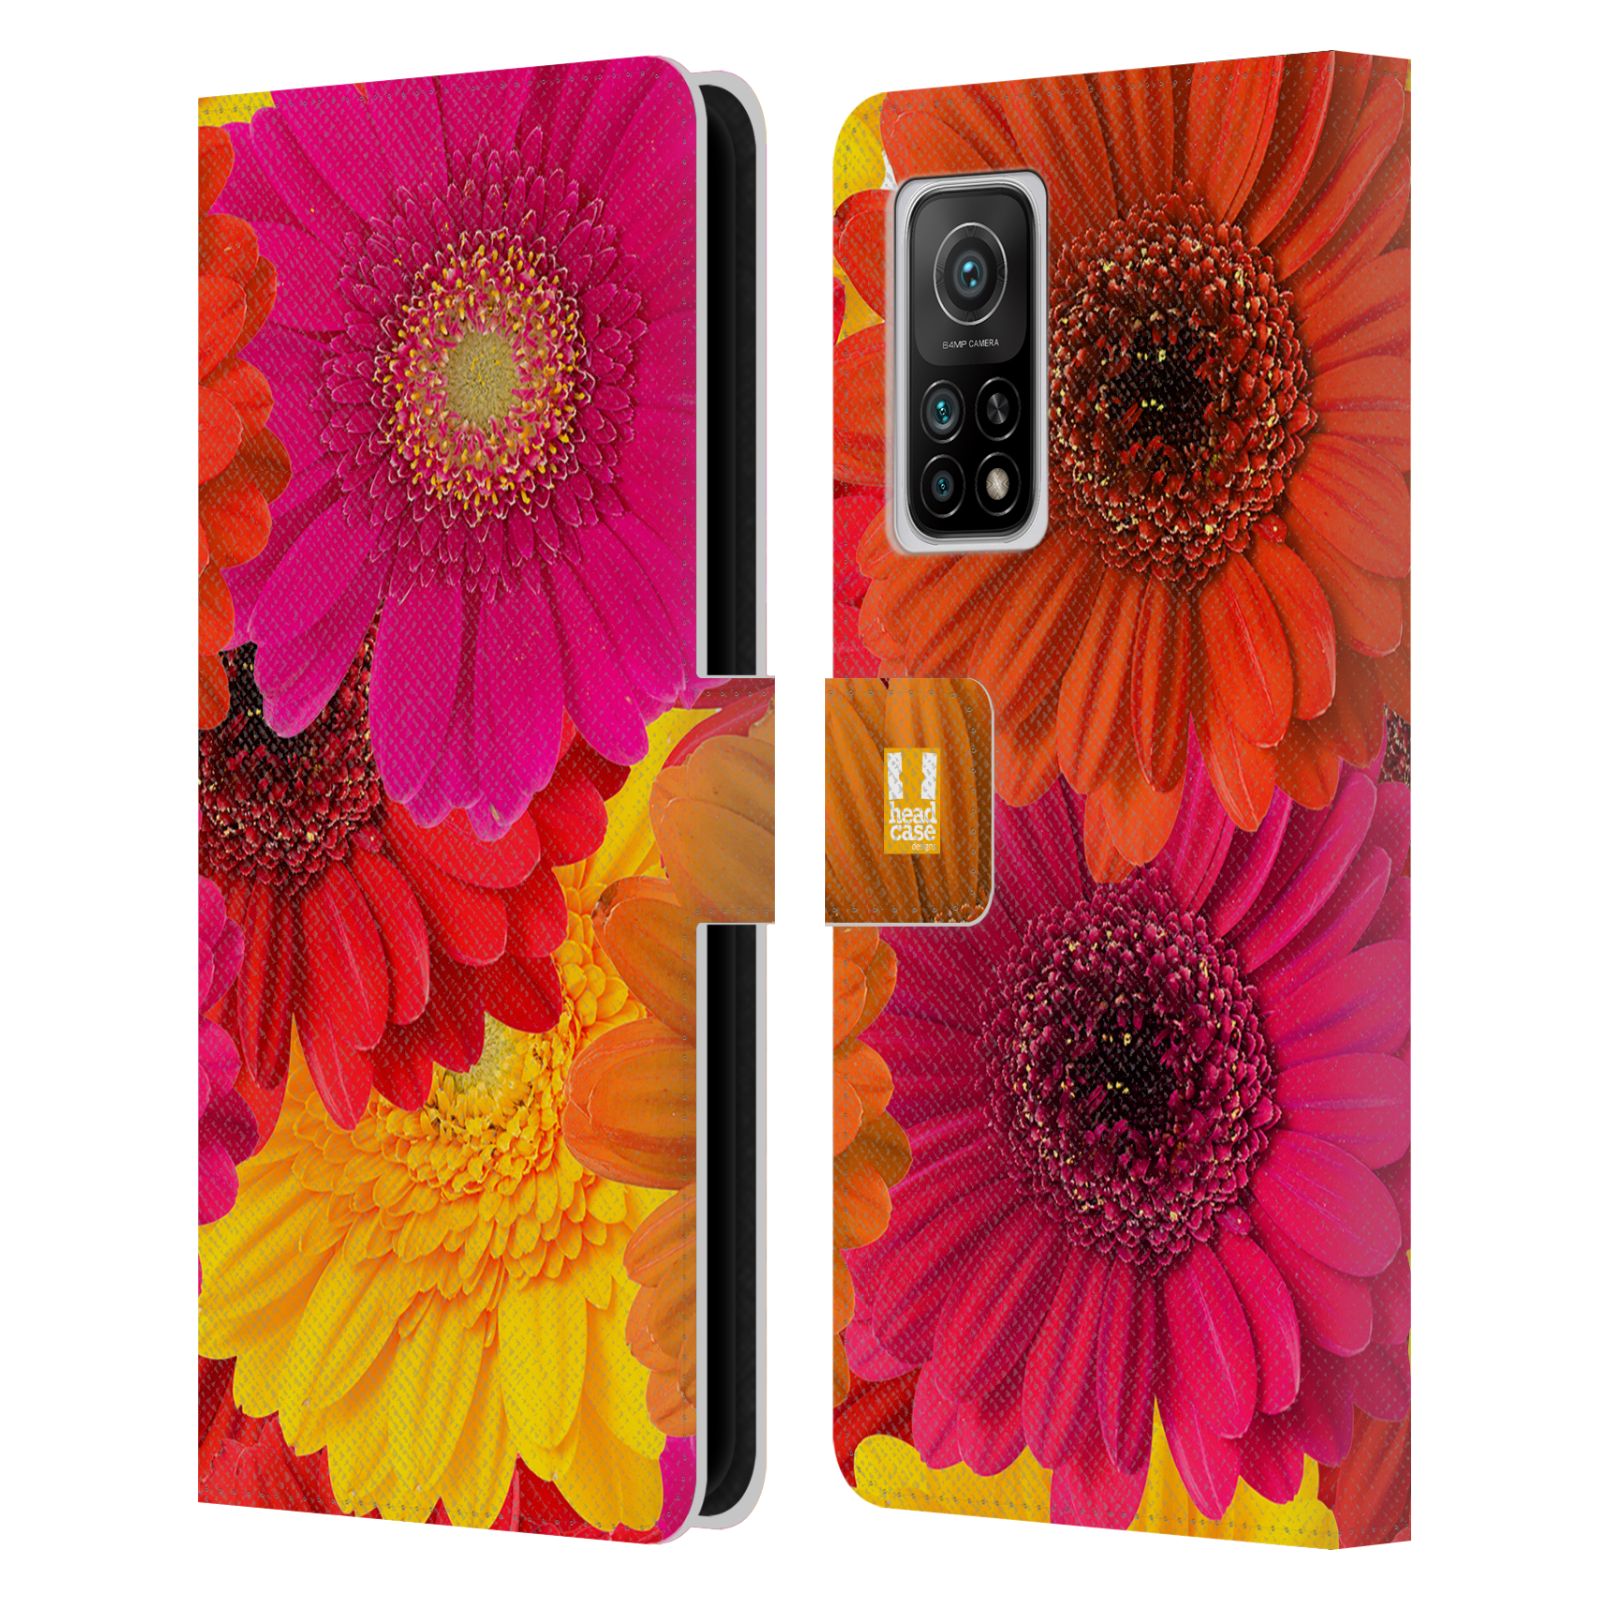 Pouzdro HEAD CASE na mobil Xiaomi Mi 10T / Mi 10T PRO květy foto fialová, oranžová GERBERA